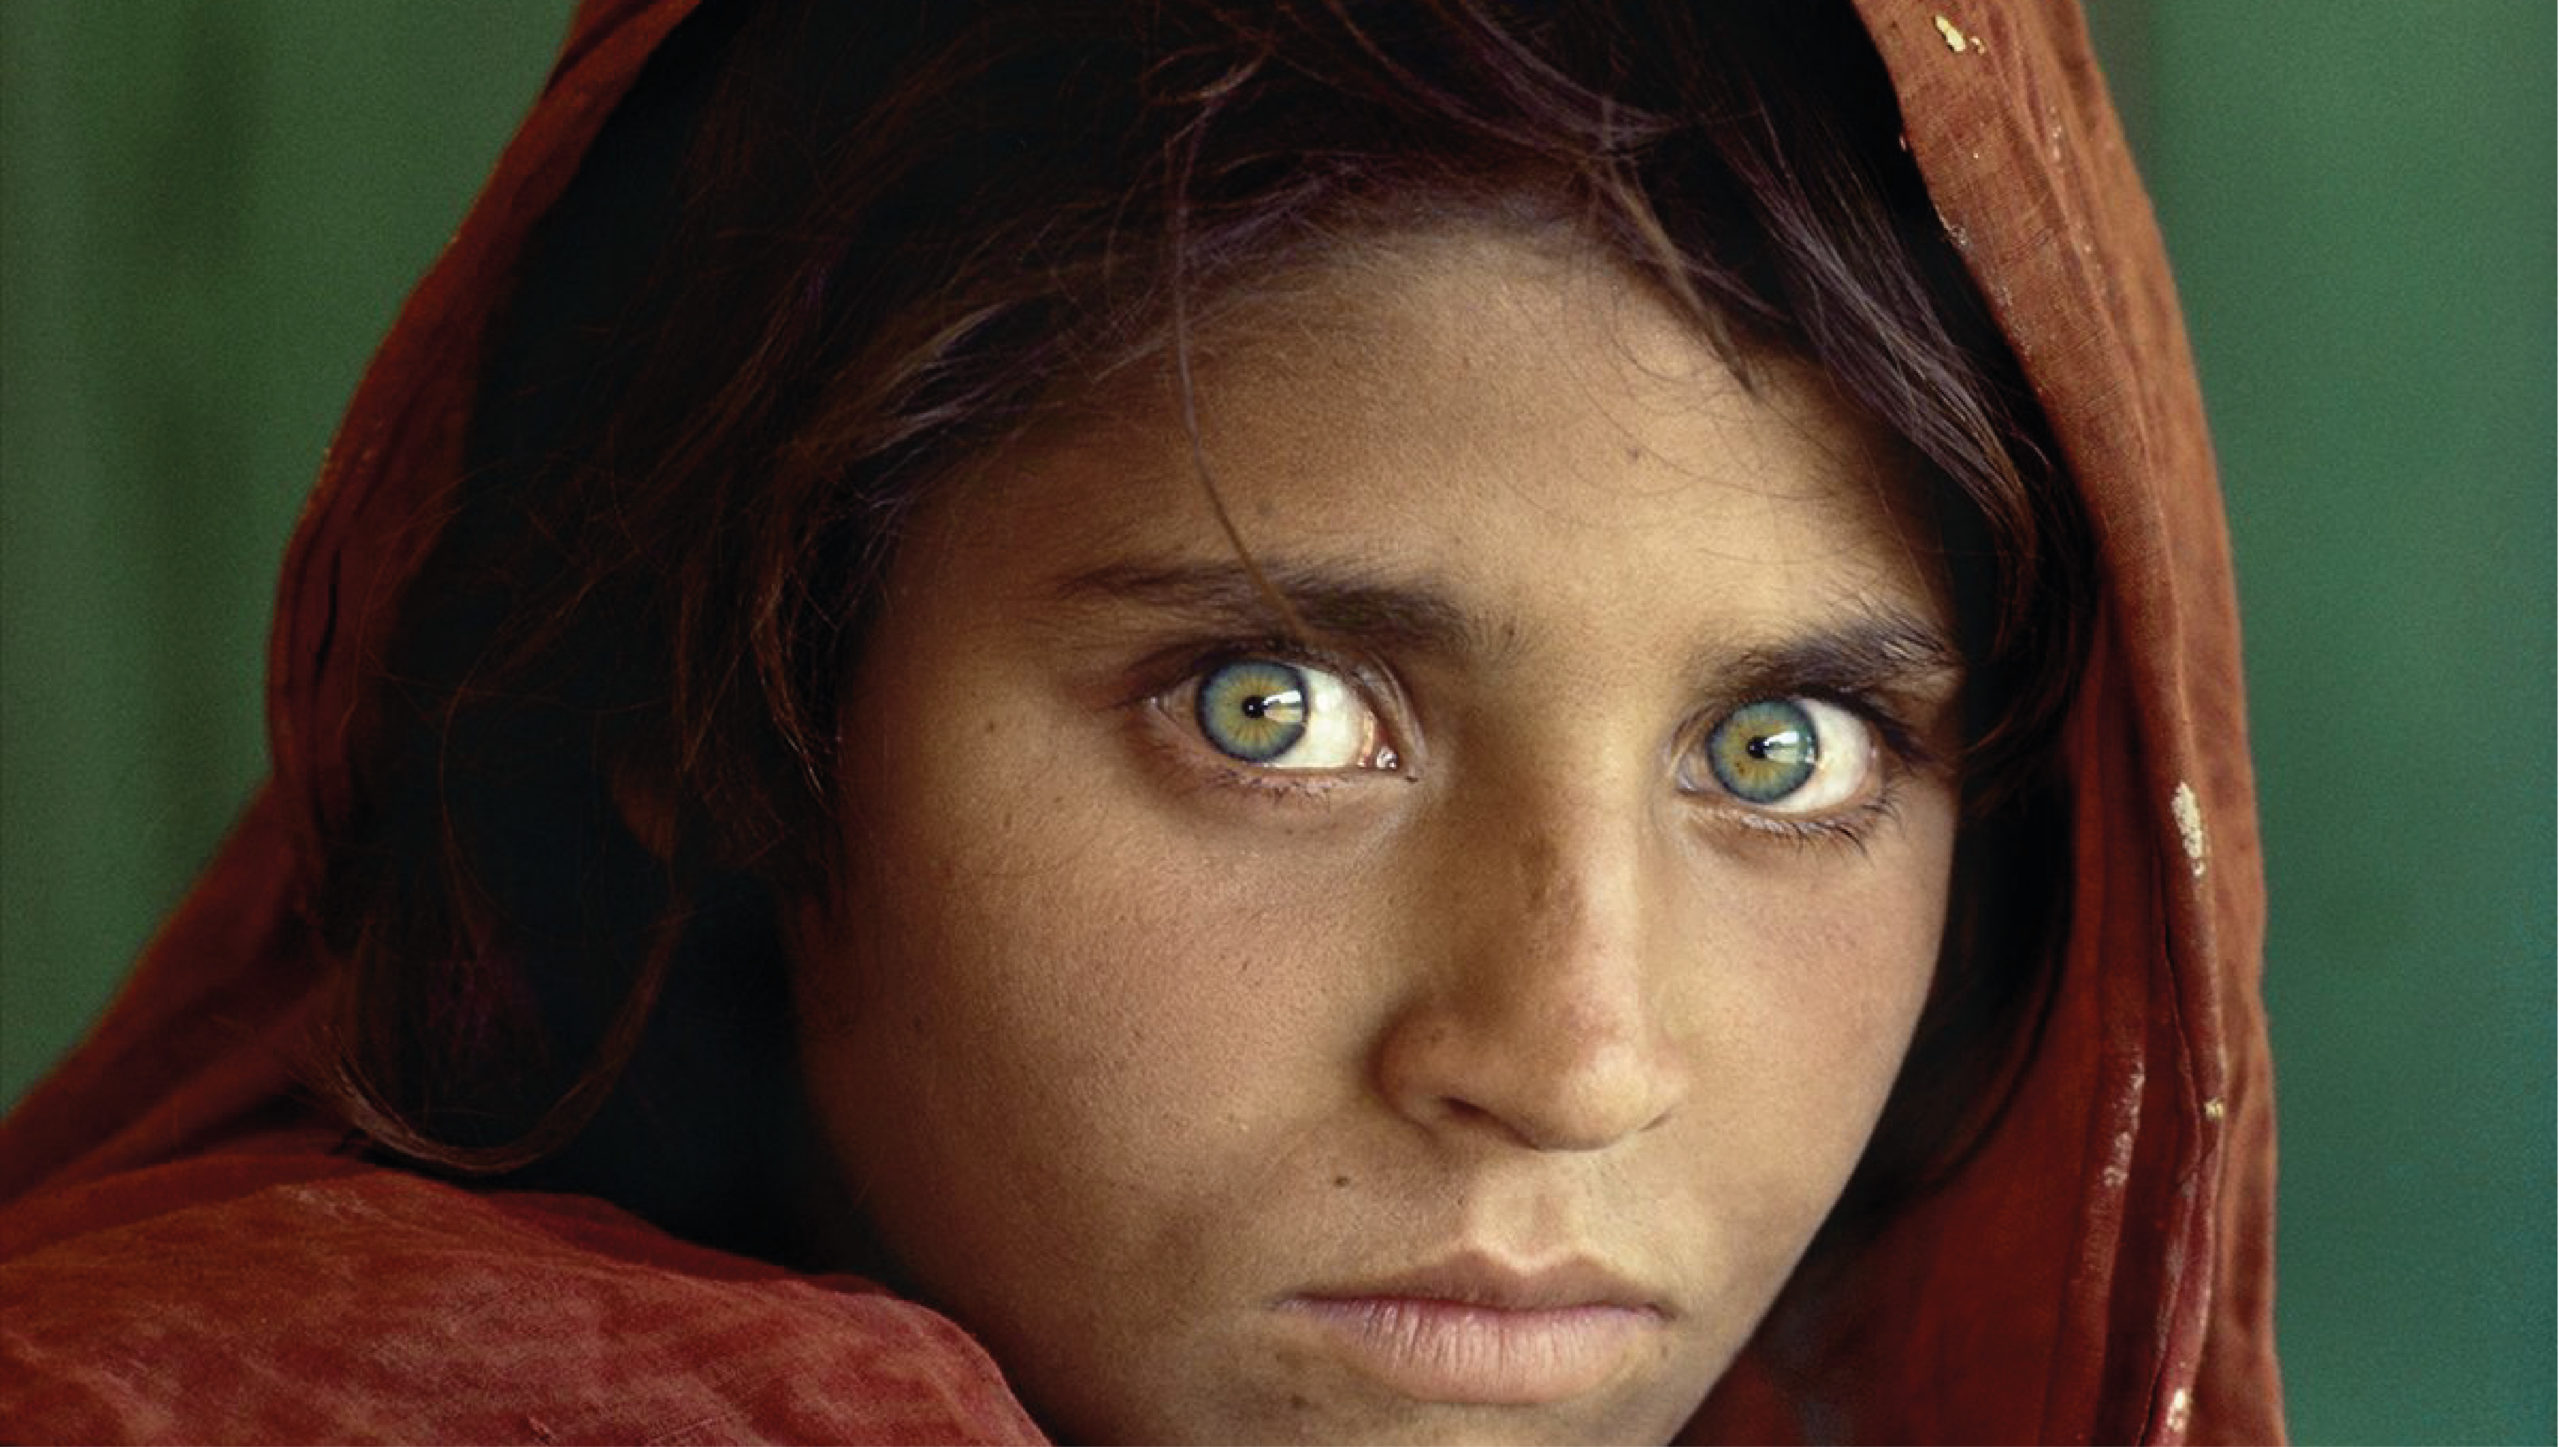 Italia concede refugio a la ‘niña afgana’ de ojos verdes de National Geographic